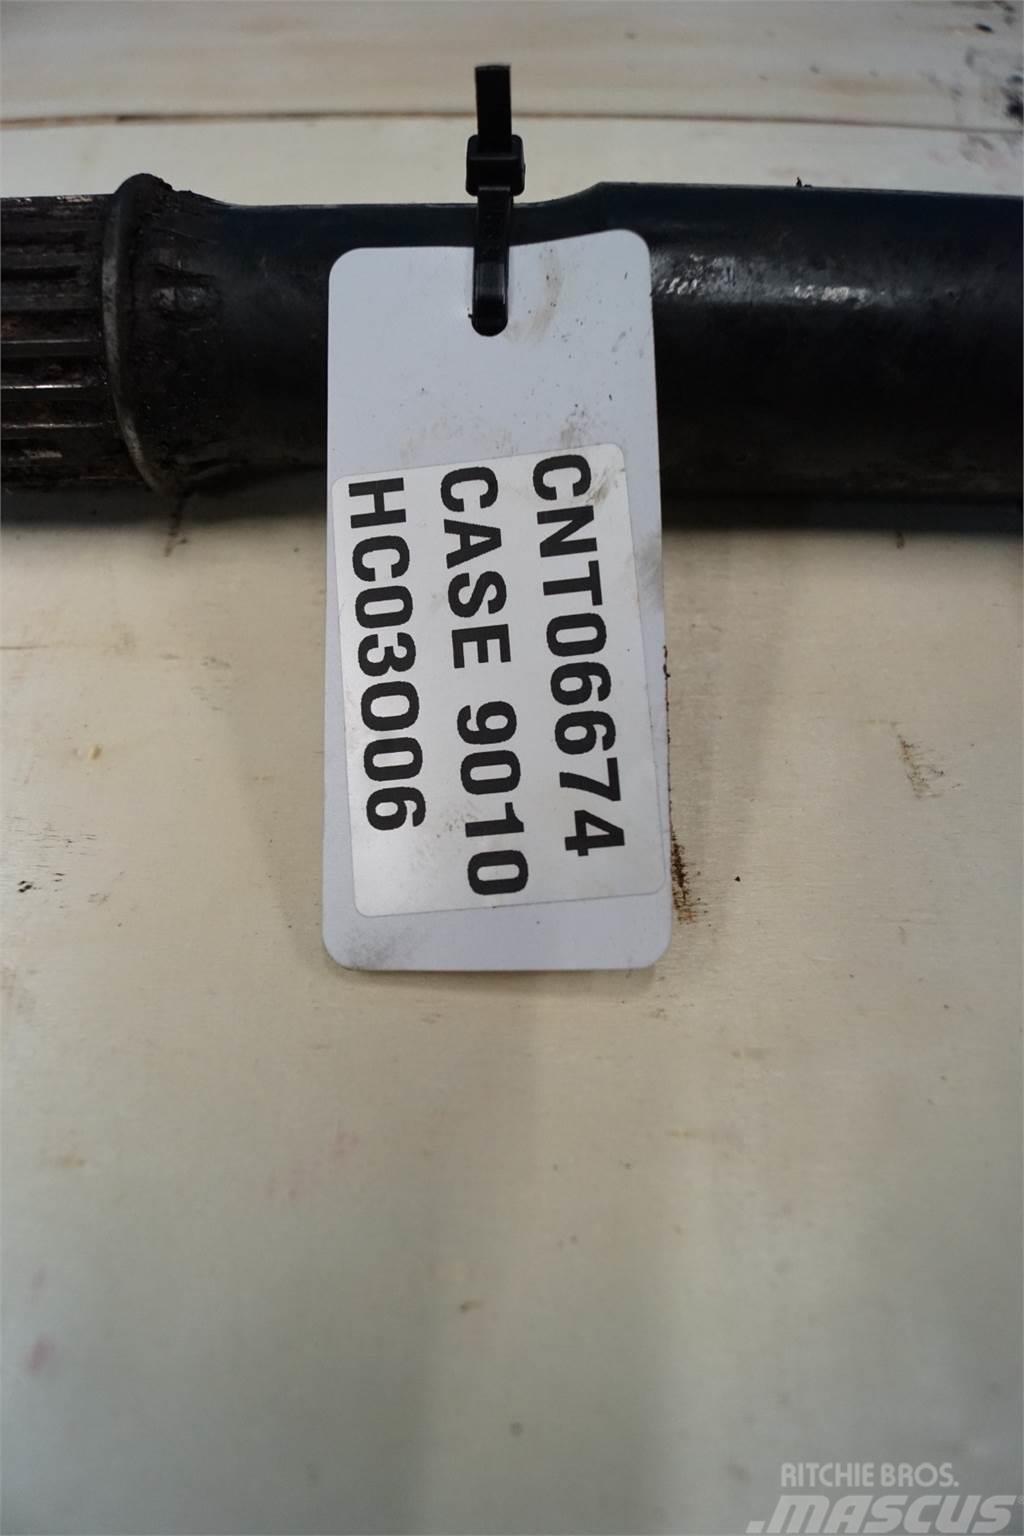 Case IH 9010 Dodatna oprema za kombajne